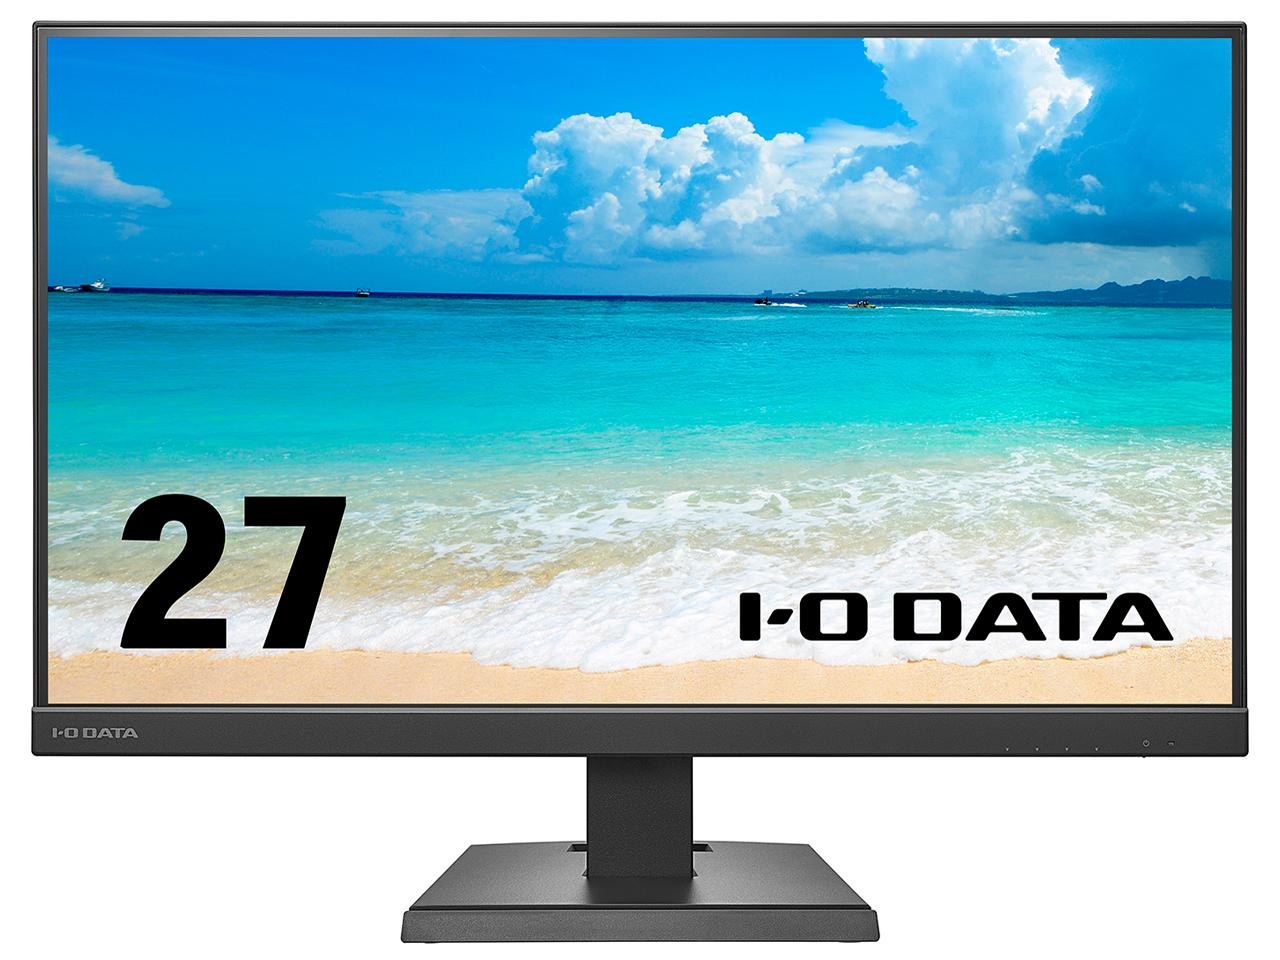 I-O DATA LCD-C271DBX （ブラック） パソコン用ディスプレイ、モニターの商品画像